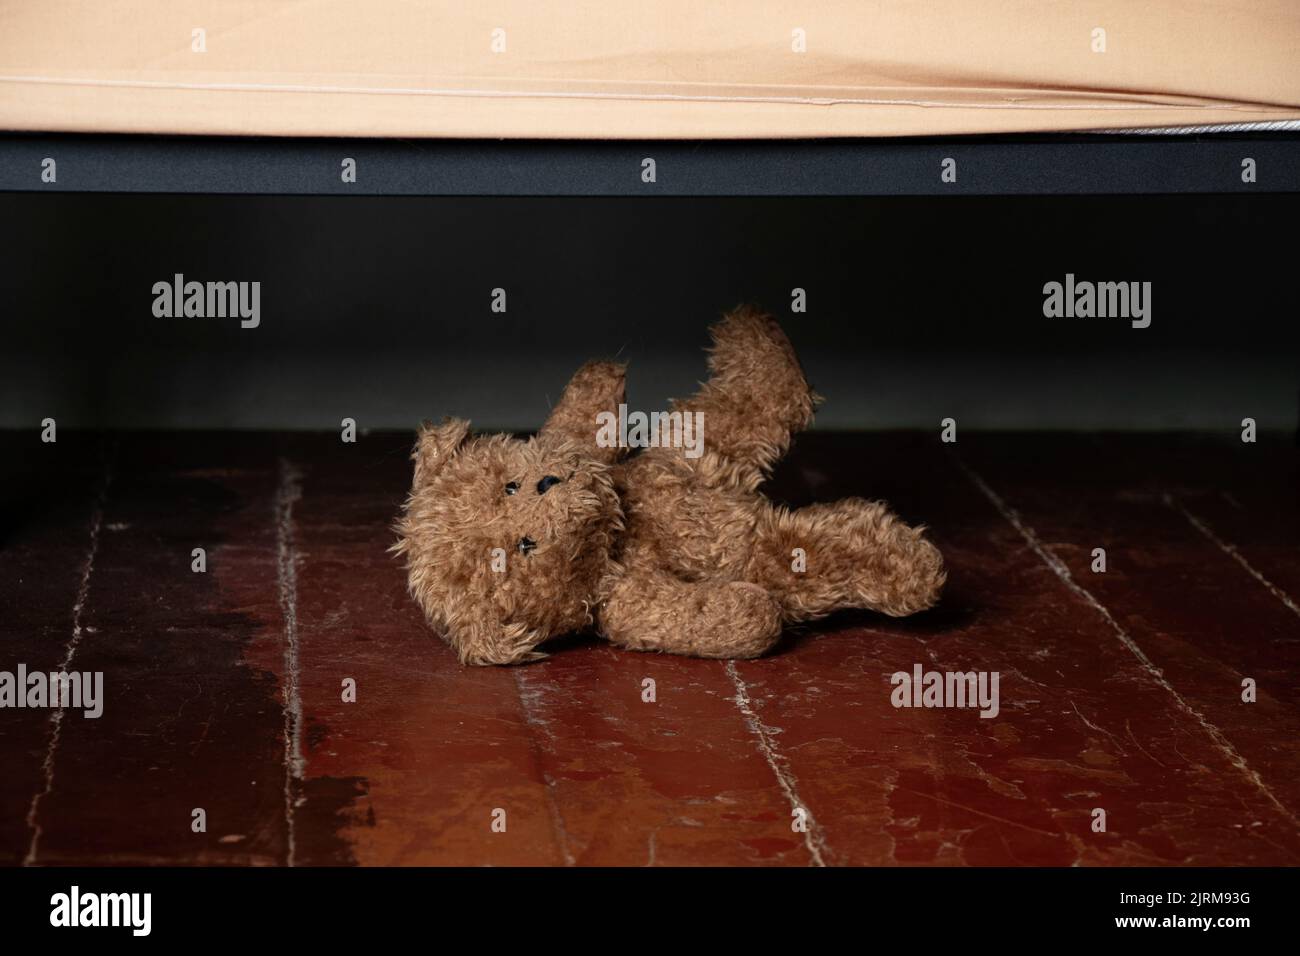 par le lit sur le sol dans la chambre de la maison se trouve un ours en peluche brun, un ours en peluche sous le lit sur le sol dans la nuit Banque D'Images